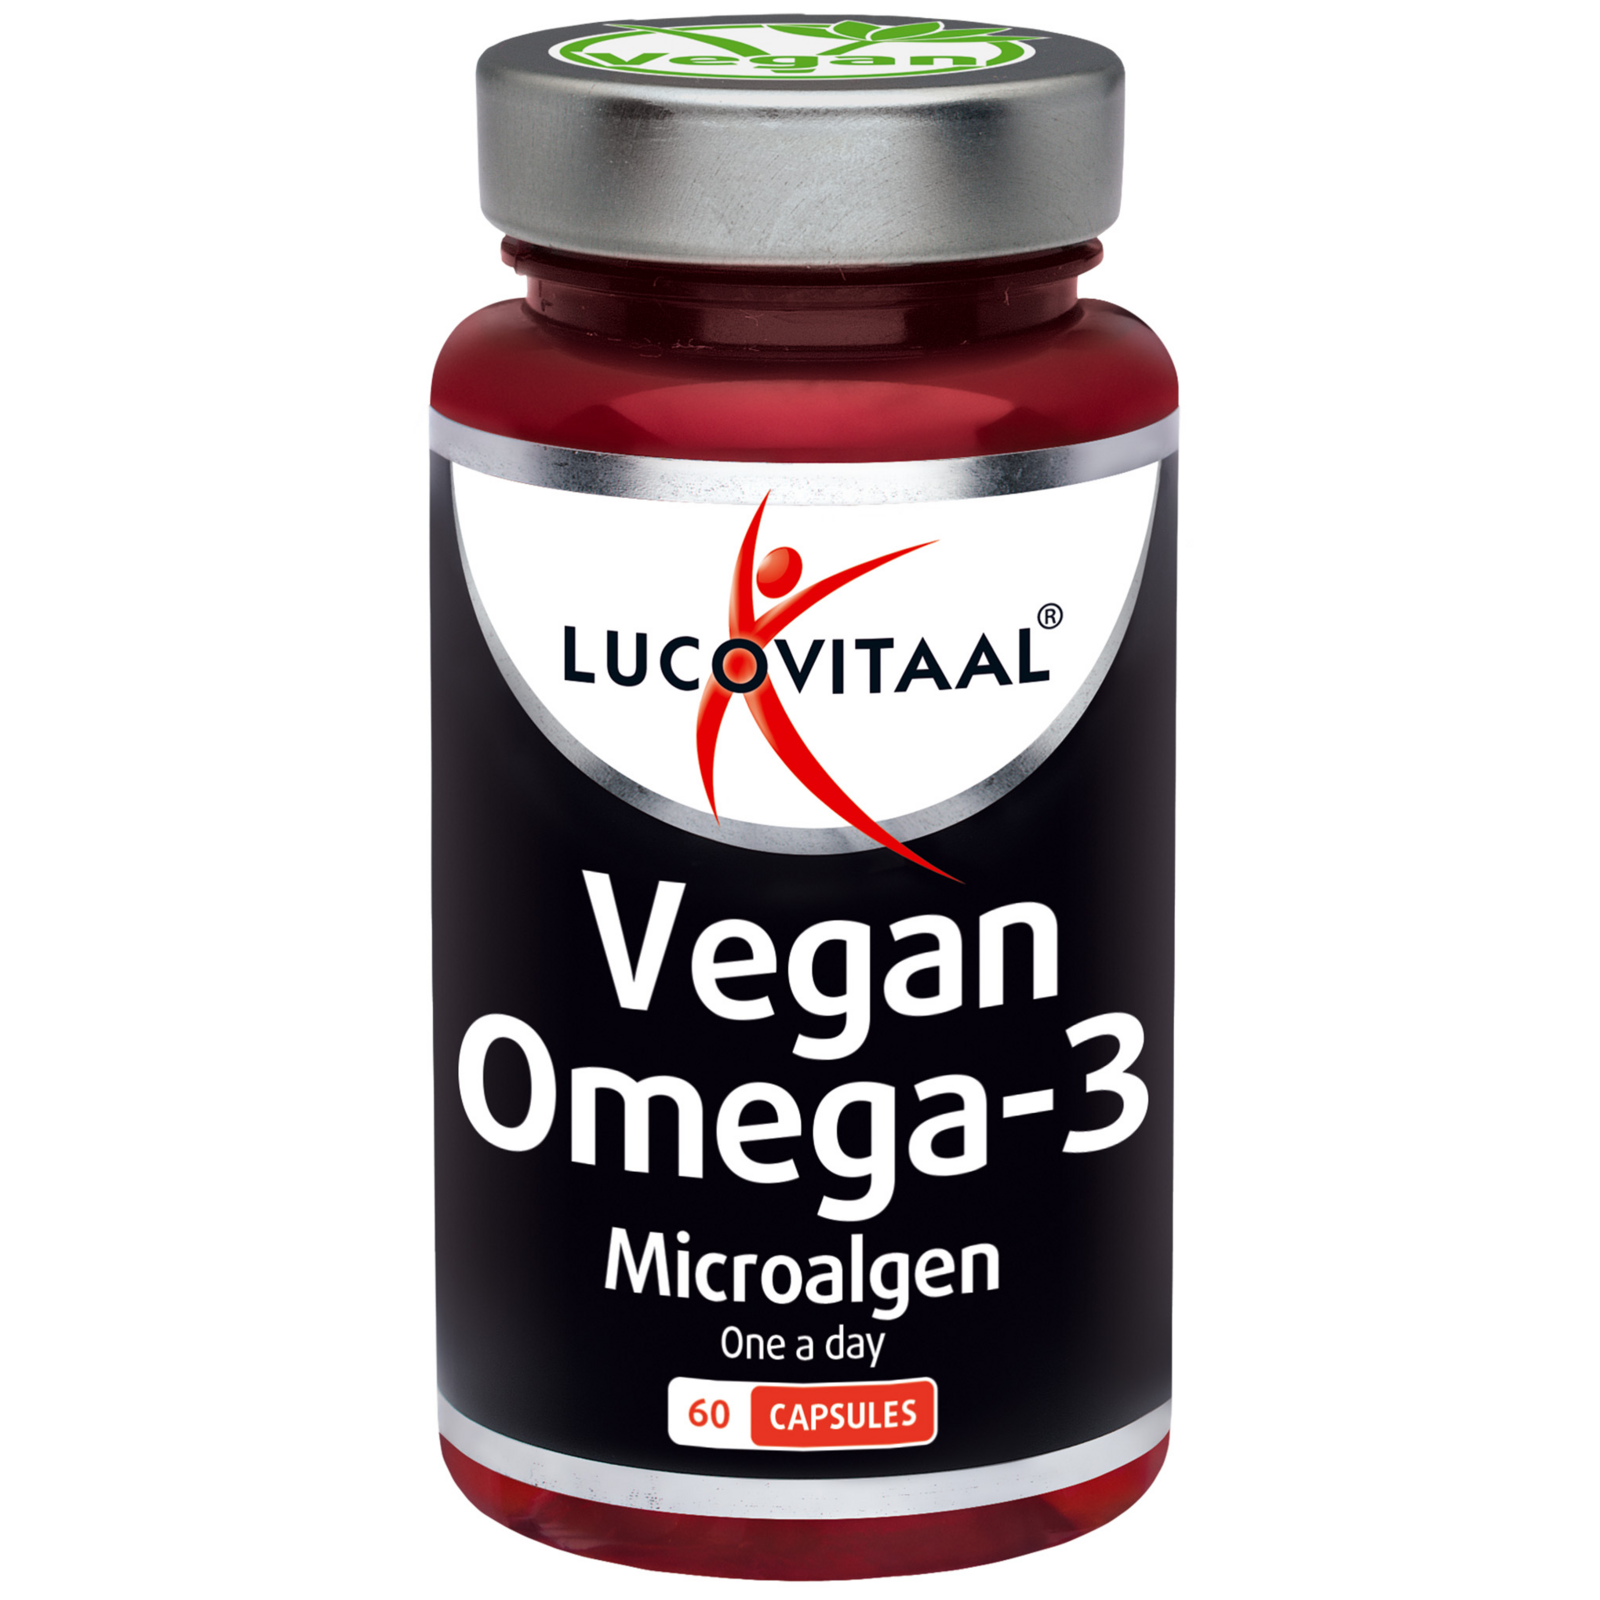 Afbeelding van Lucovitaal Omega 3 Microalgen Vegan